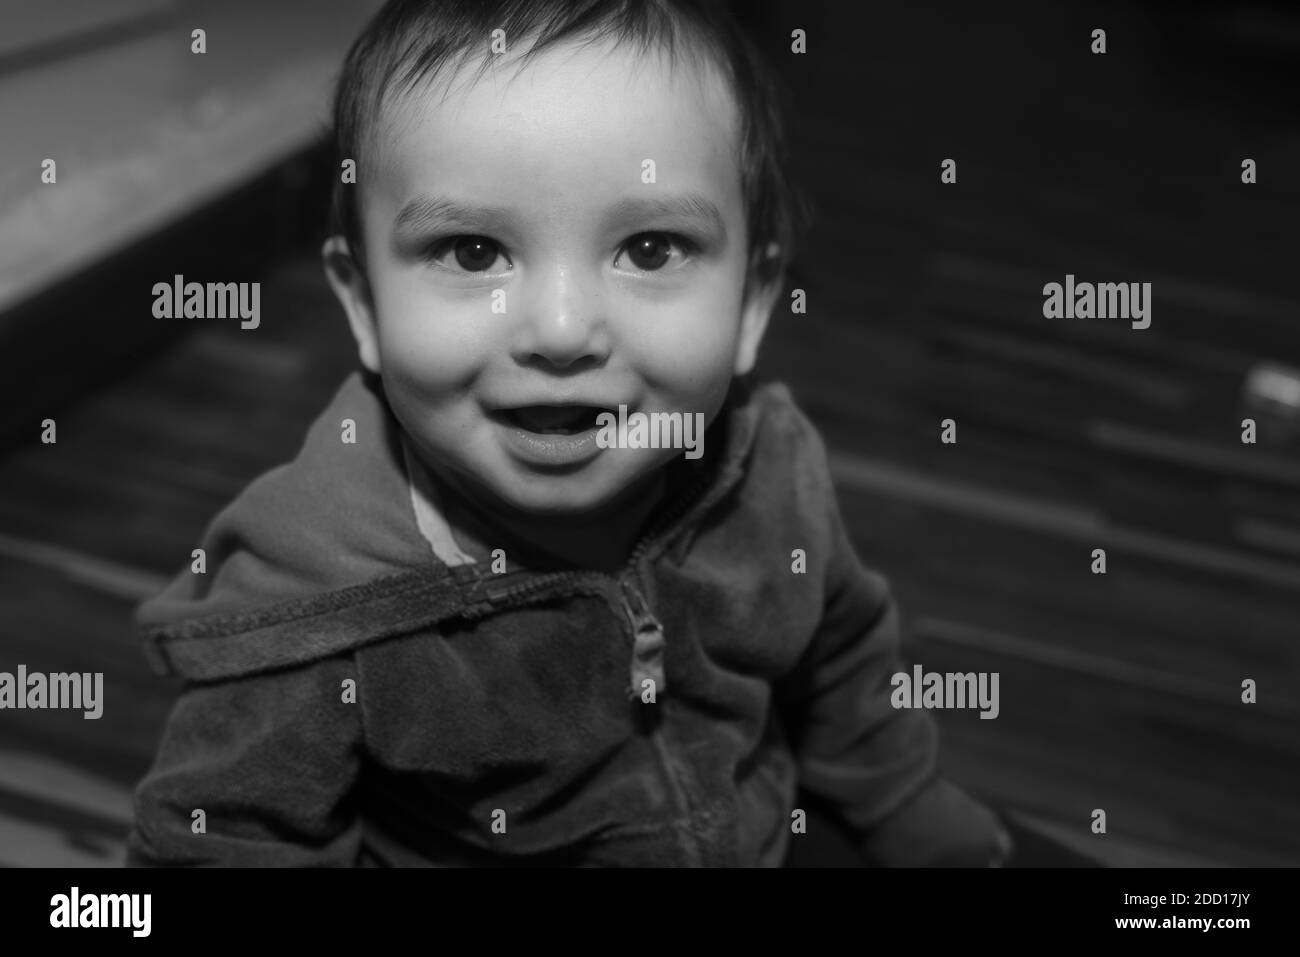 Une vue de dessus de près d'un bébé afro-américain mignon se tenir debout et sourire à la caméra Banque D'Images